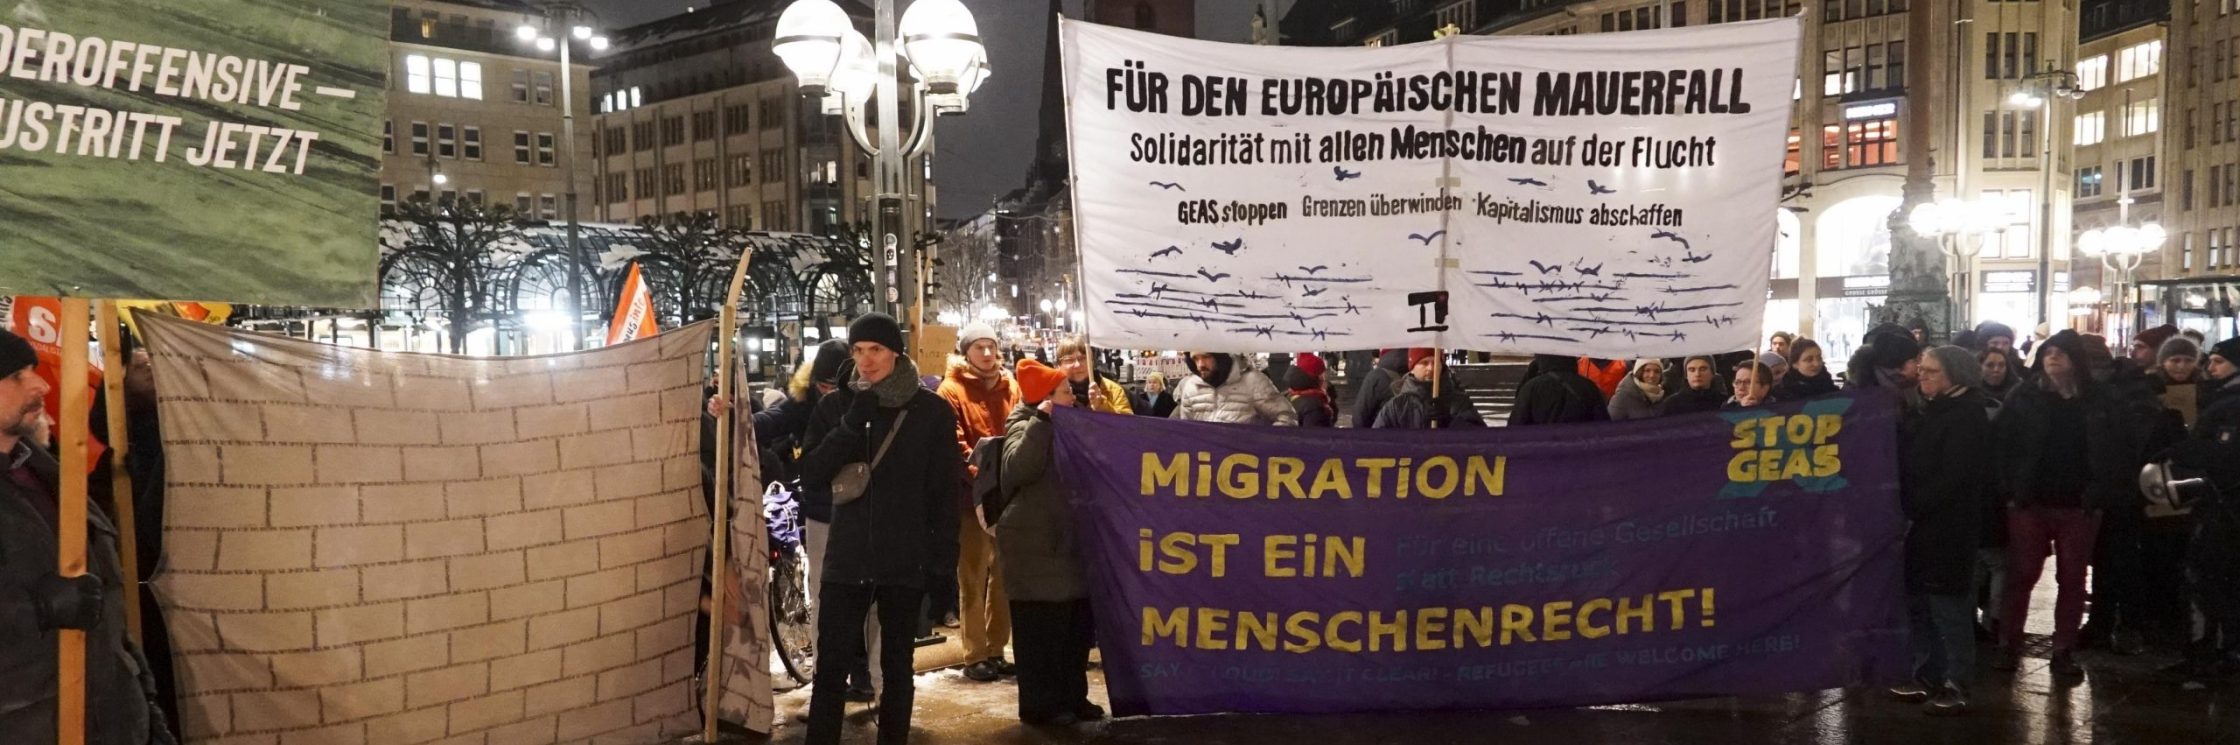 Demonstrant*innen protestieren mit Plakaten und Bannern für das Recht auf Migration